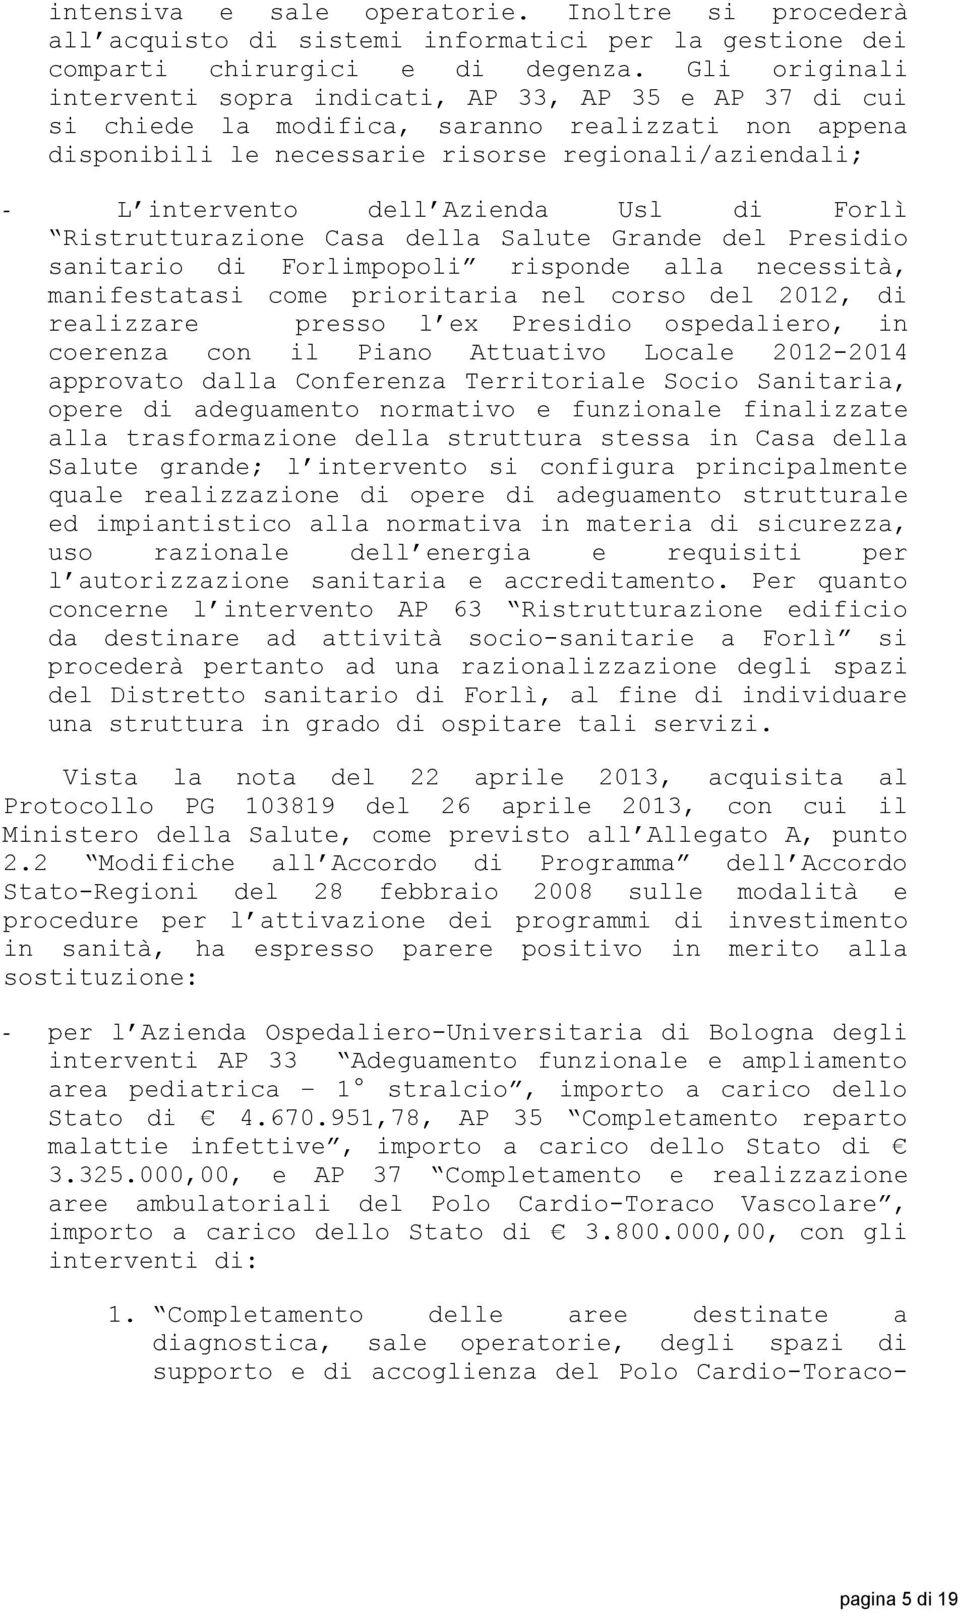 Azienda Usl di Forlì Ristrutturazione Casa della Salute Grande del Presidio sanitario di Forlimpopoli risponde alla necessità, manifestatasi come prioritaria nel corso del 2012, di realizzare presso